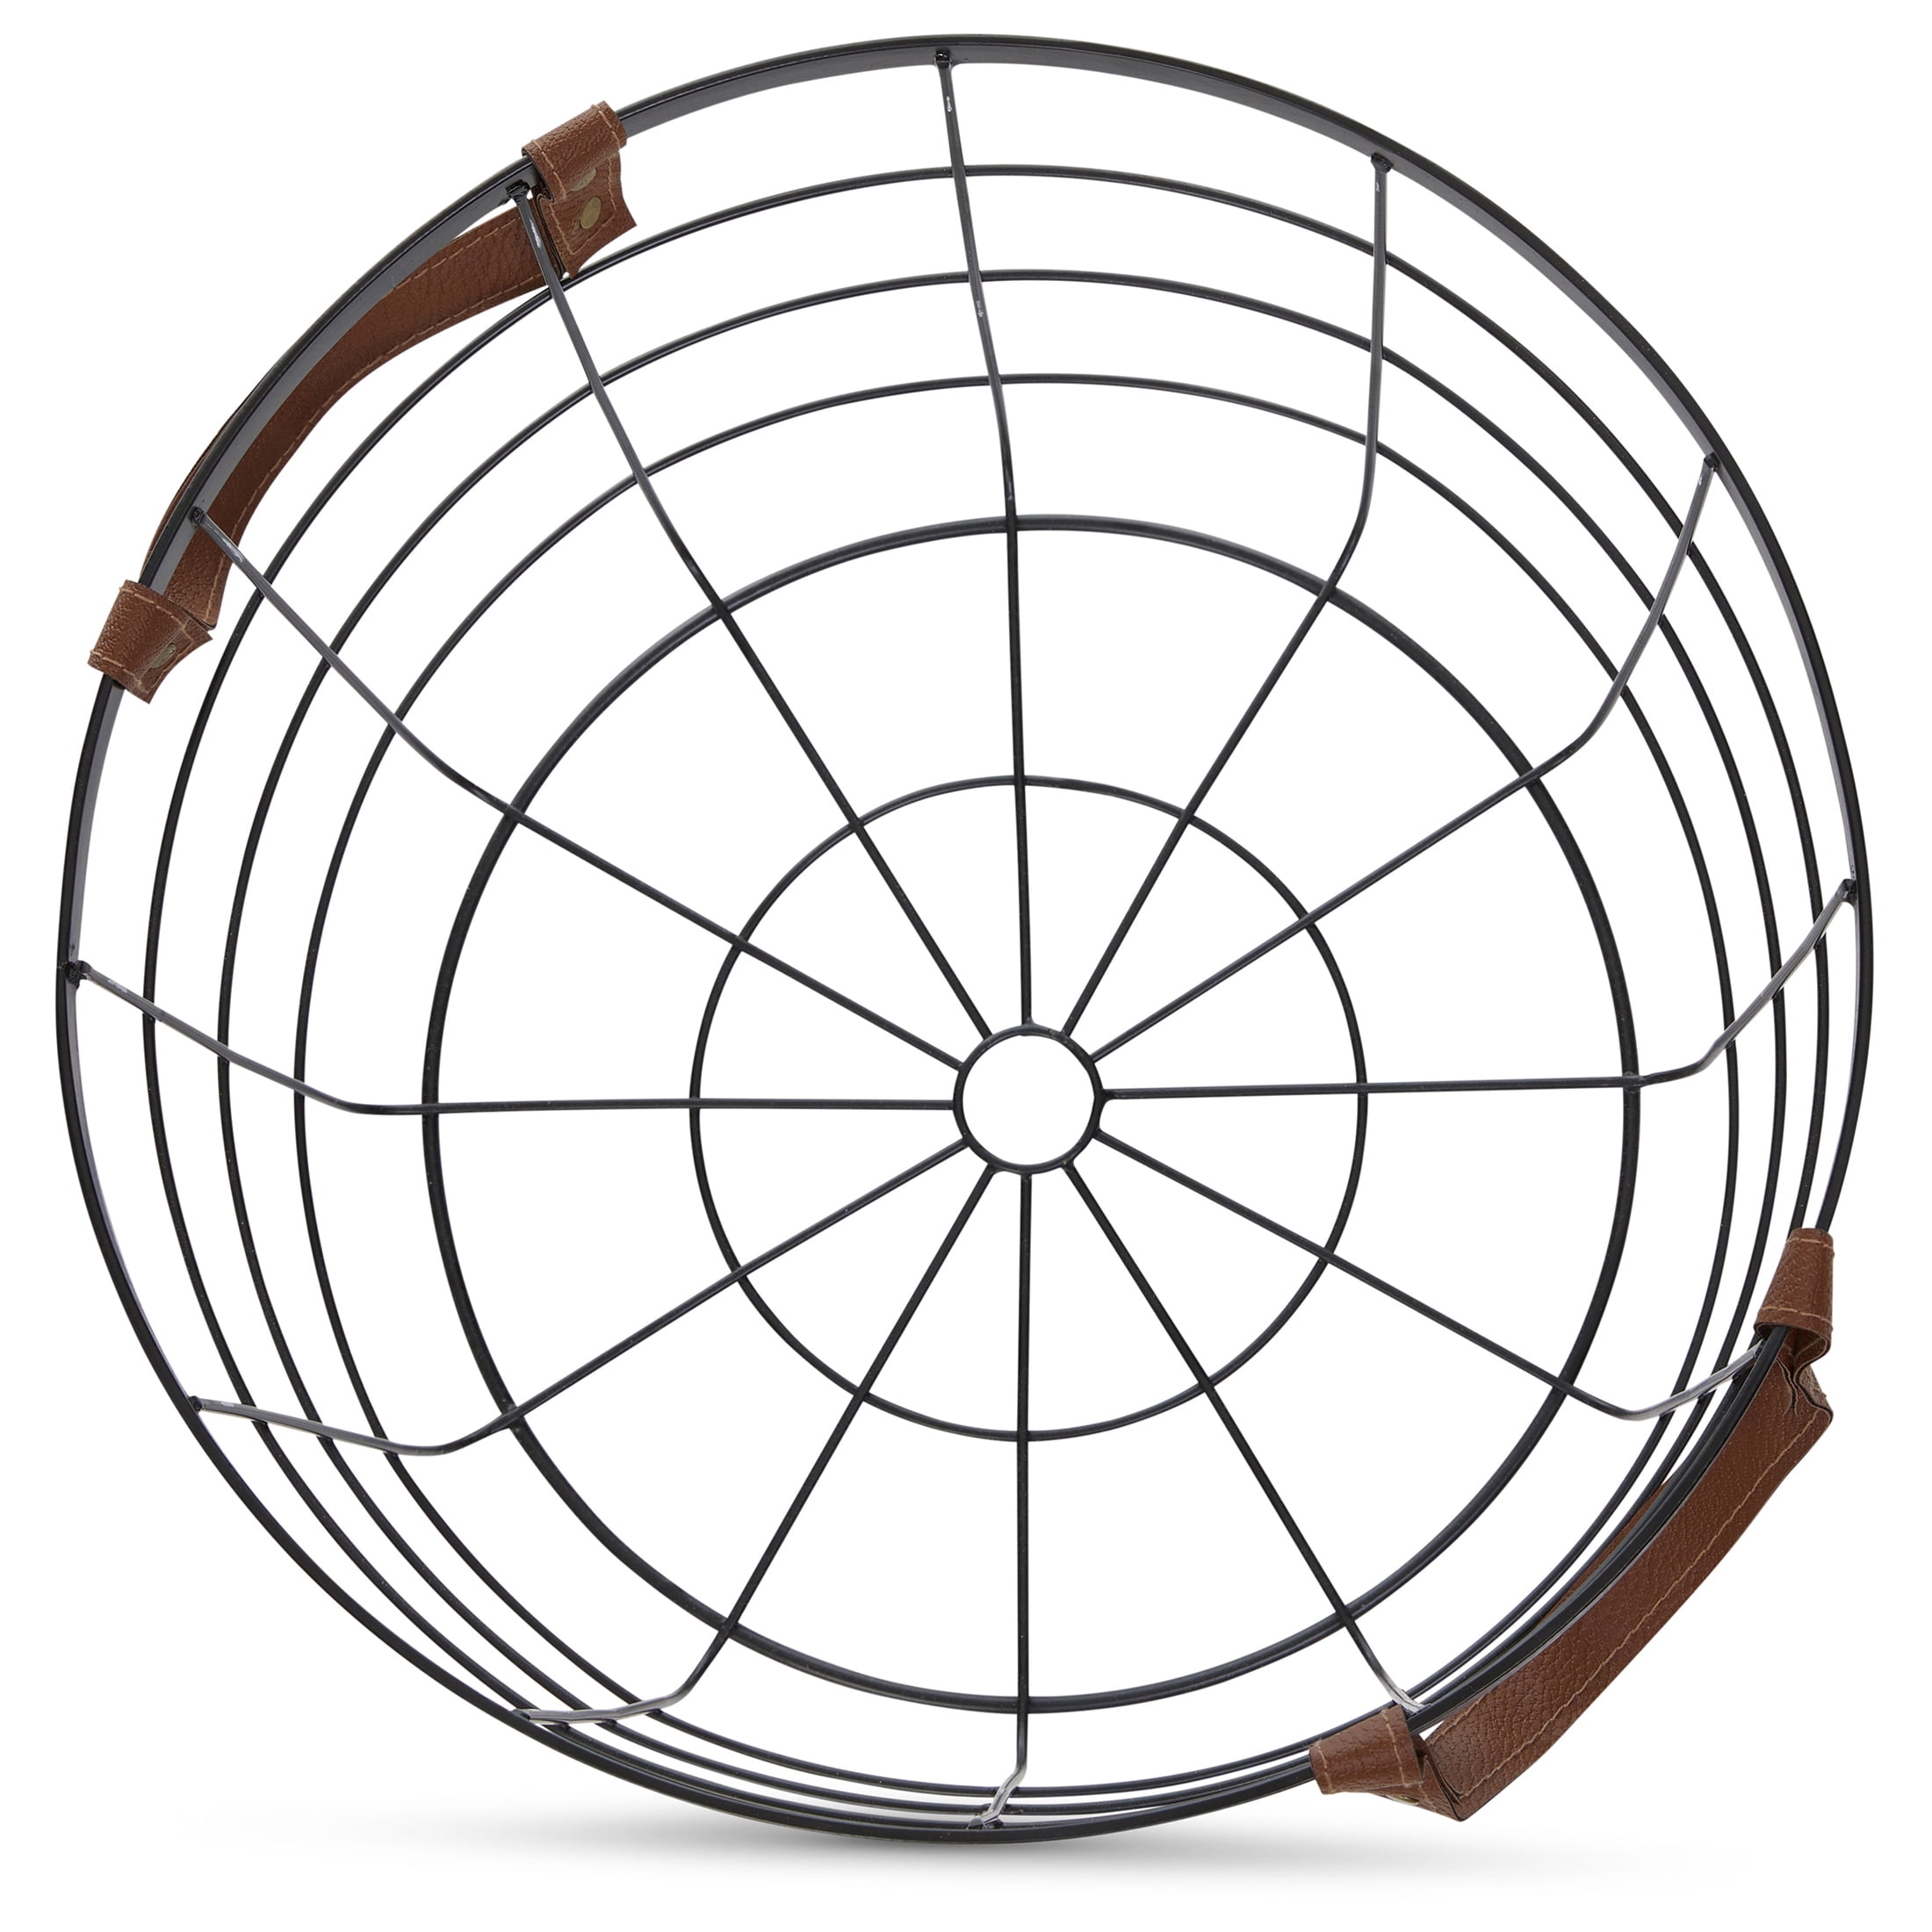 Mainstays Round Wire Basket With Handles Medium Size Black